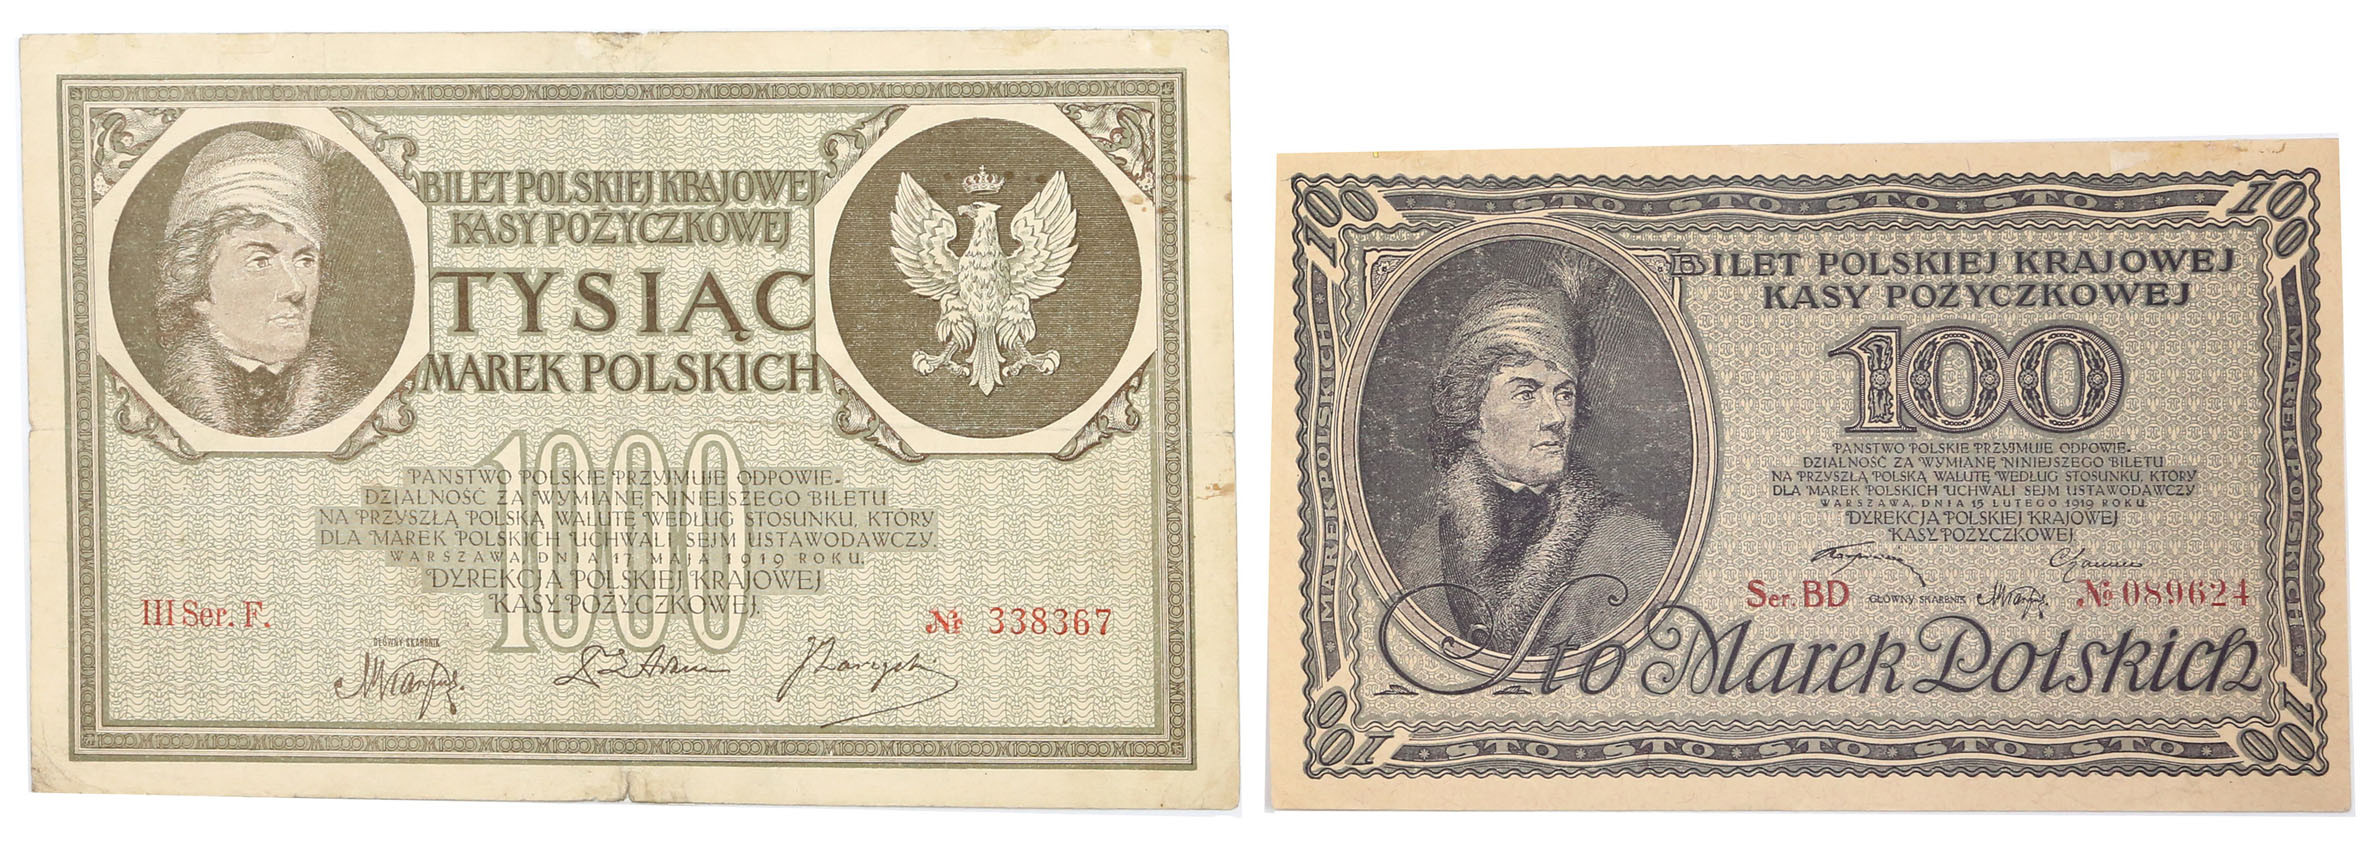 100, 1.000 marek polskich 1919, zestaw 2 banknotów